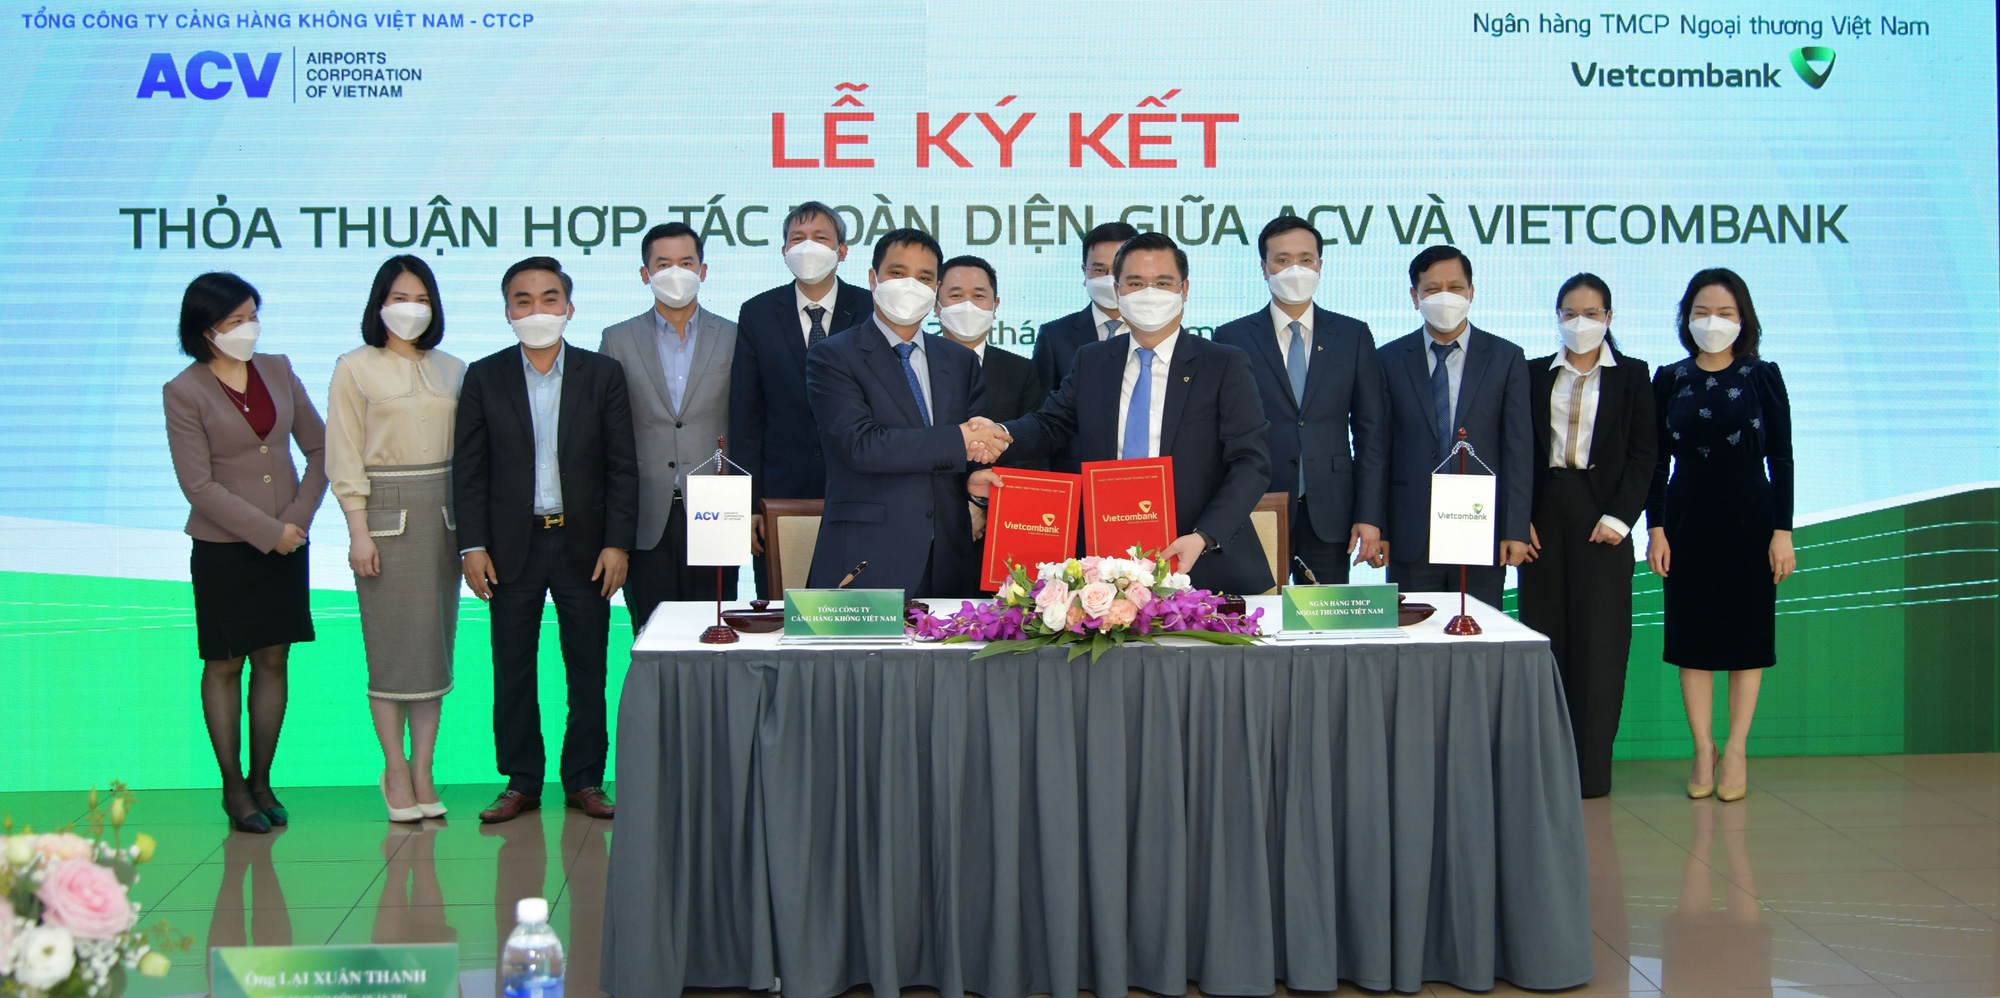 Vietcombank và Tổng công ty Cảng hàng không Việt Nam ký kết Thỏa thuận hợp tác toàn diện - Ảnh 3.